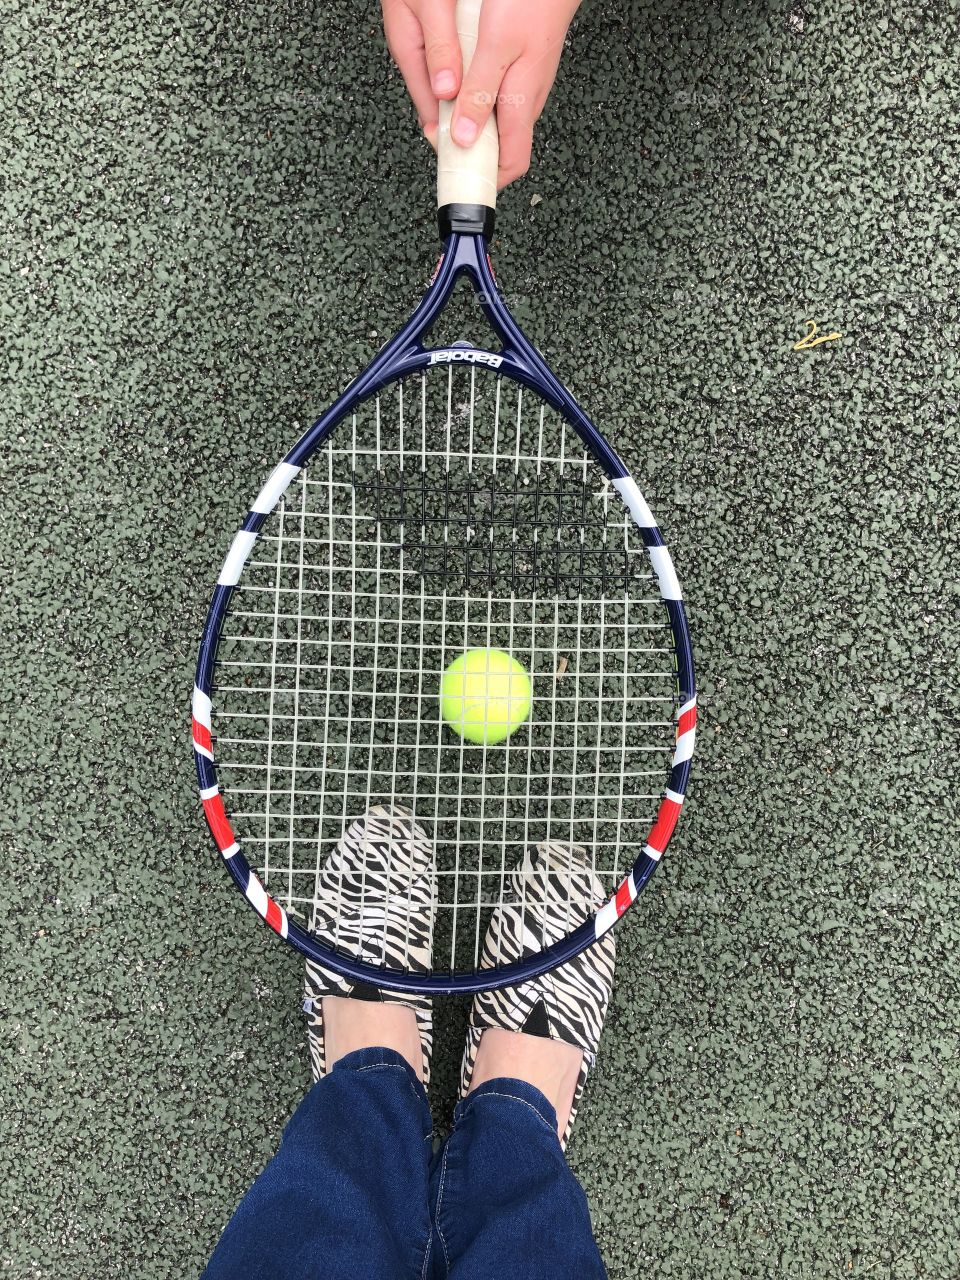 Feet under a tennis racket and ball 